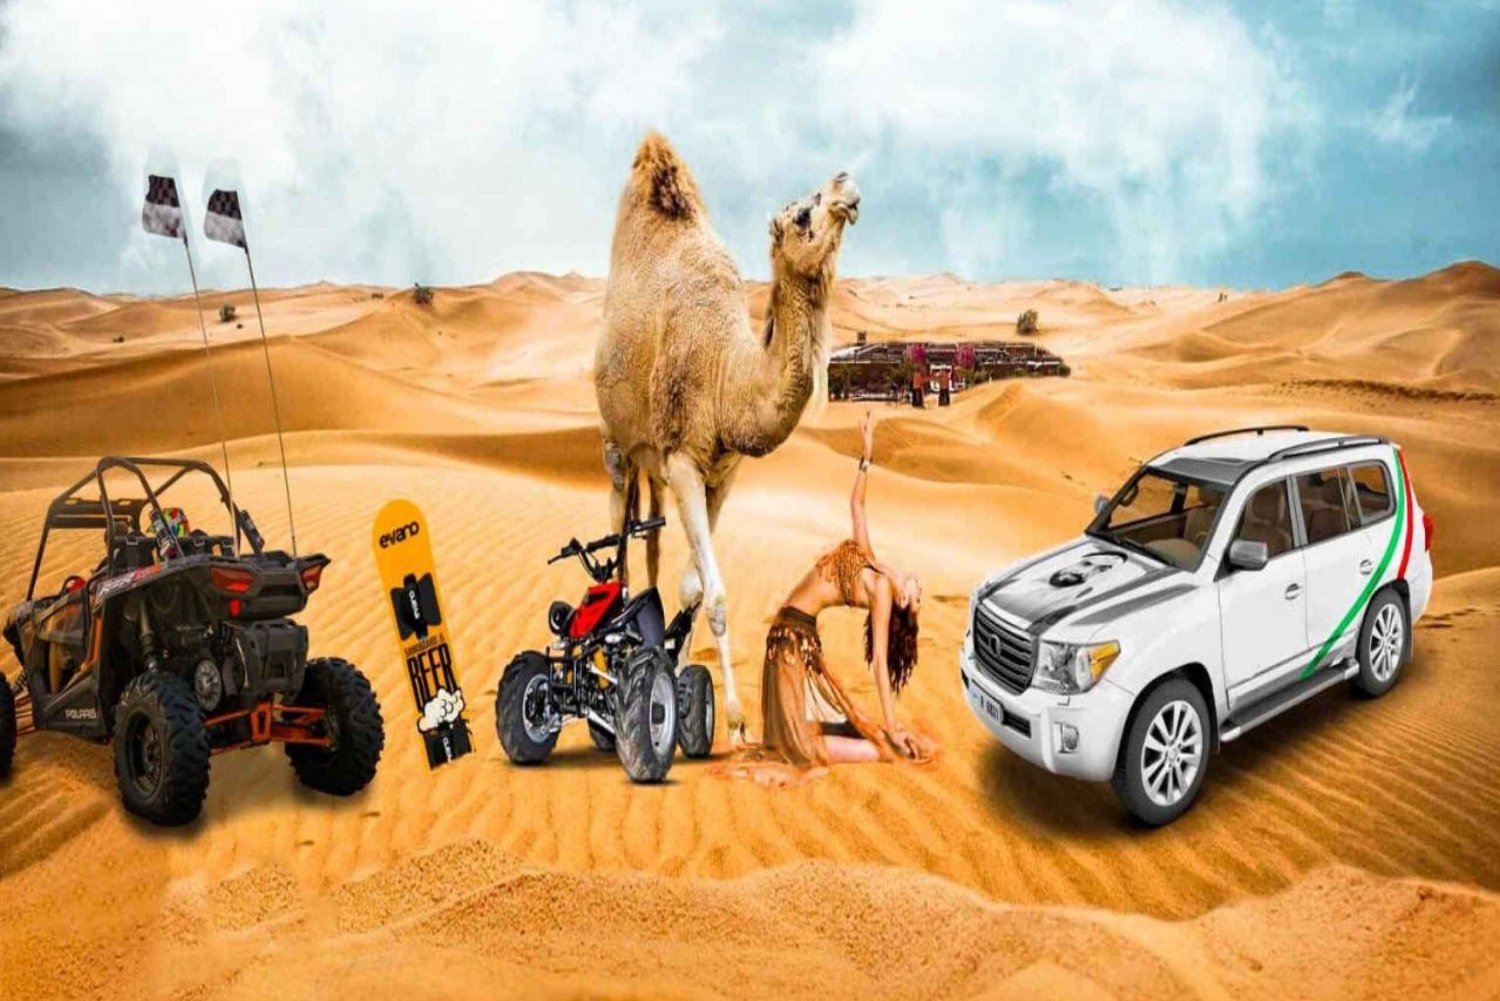 Ørkensafari i Dubai, sandbrett, grillmat, kamelridning og show